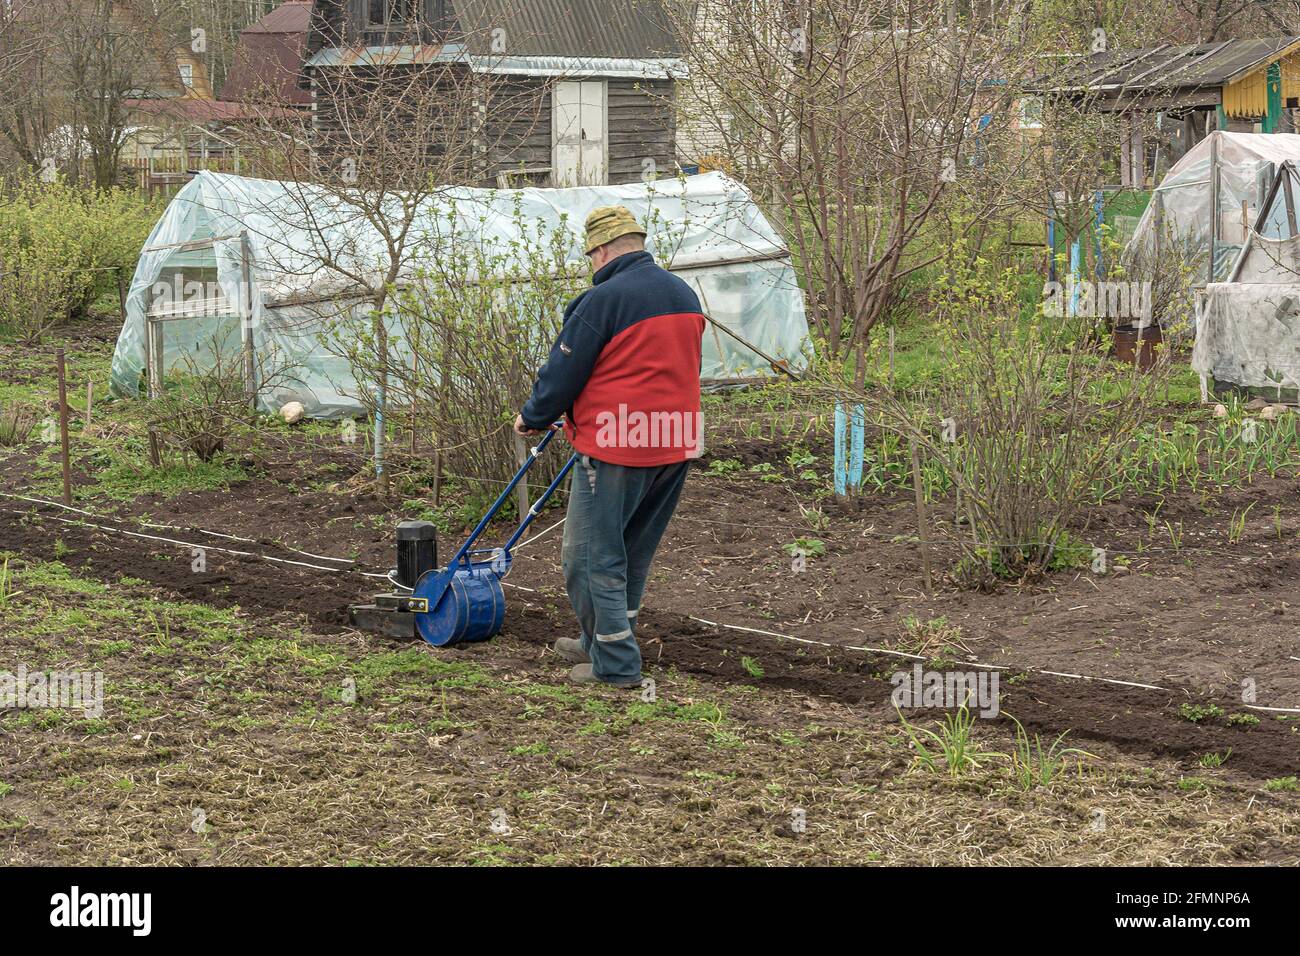 POLEN, LOMZA - 01. Mai 2021: Ein Landwirt auf einem privaten Gehöft bewirtschaftet ein Pflanzgut. Stock Foto. Stockfoto